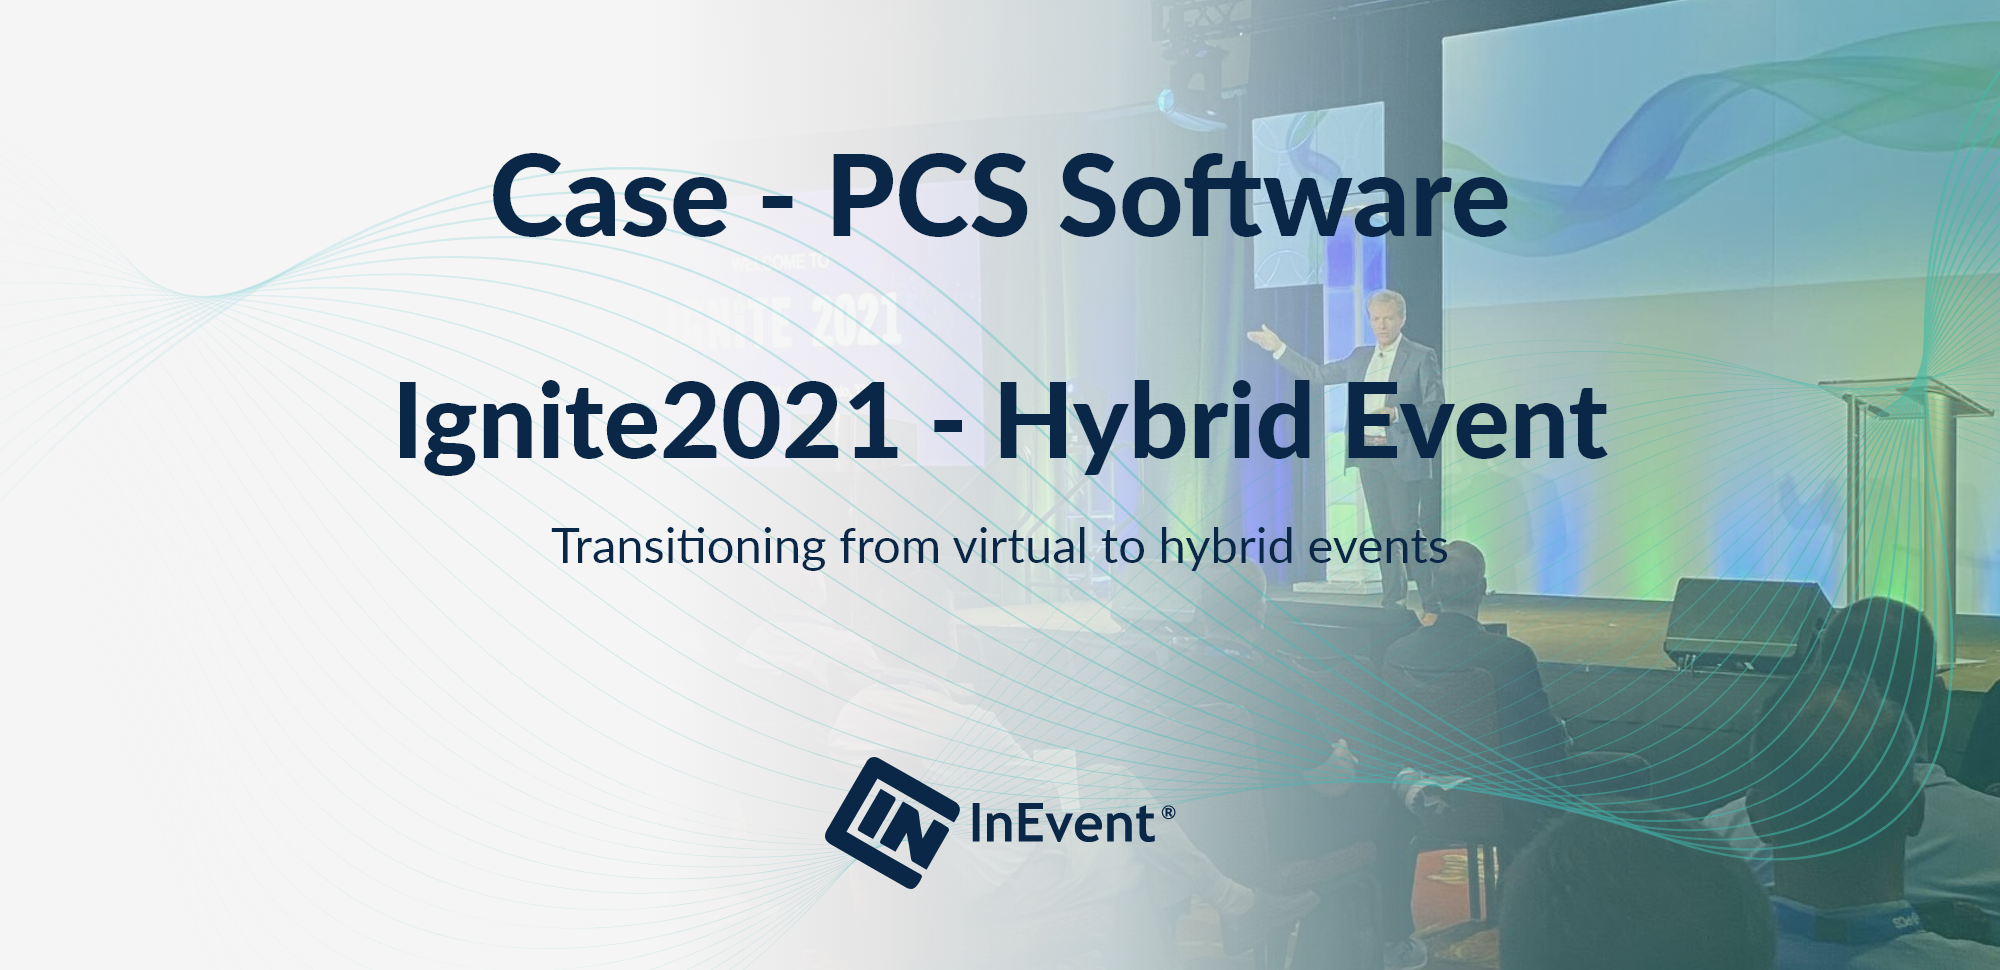 Événement hybride PCS Software Ignite2021